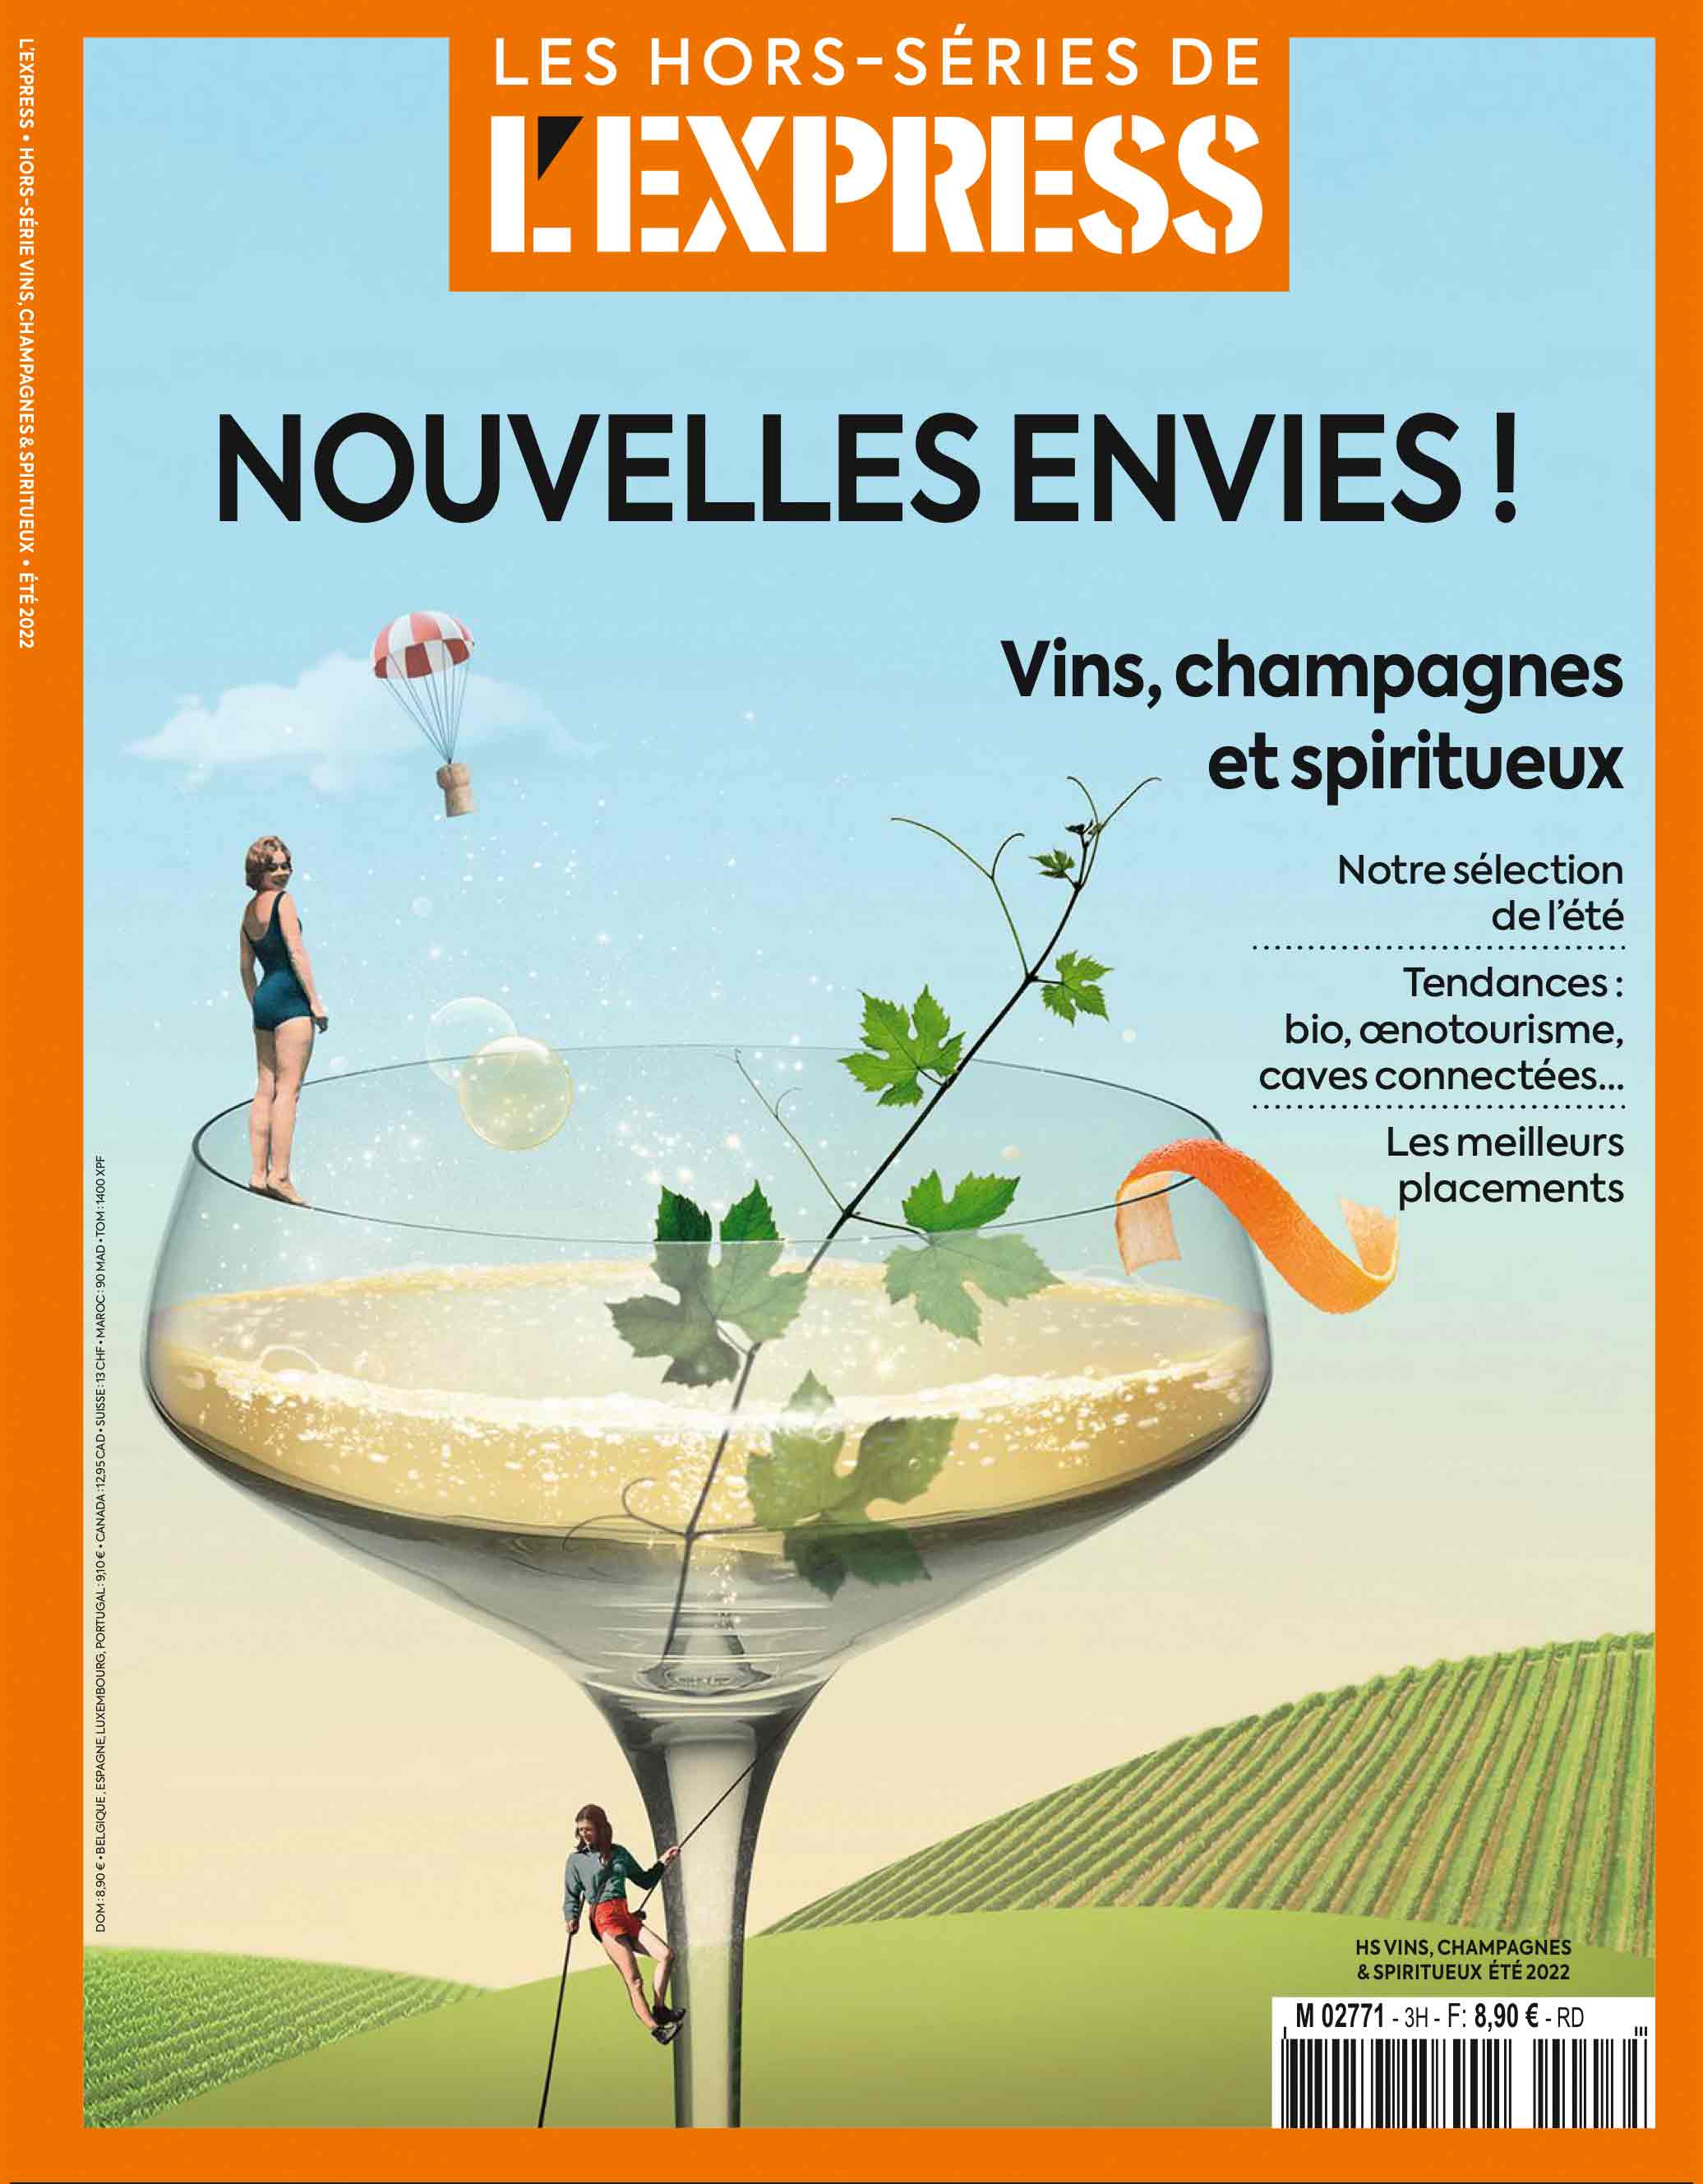 « NOUVELLES ENVIES » Couverture L’Express Hors-Série Vins Champagnes & Spiritueux Juin 2022